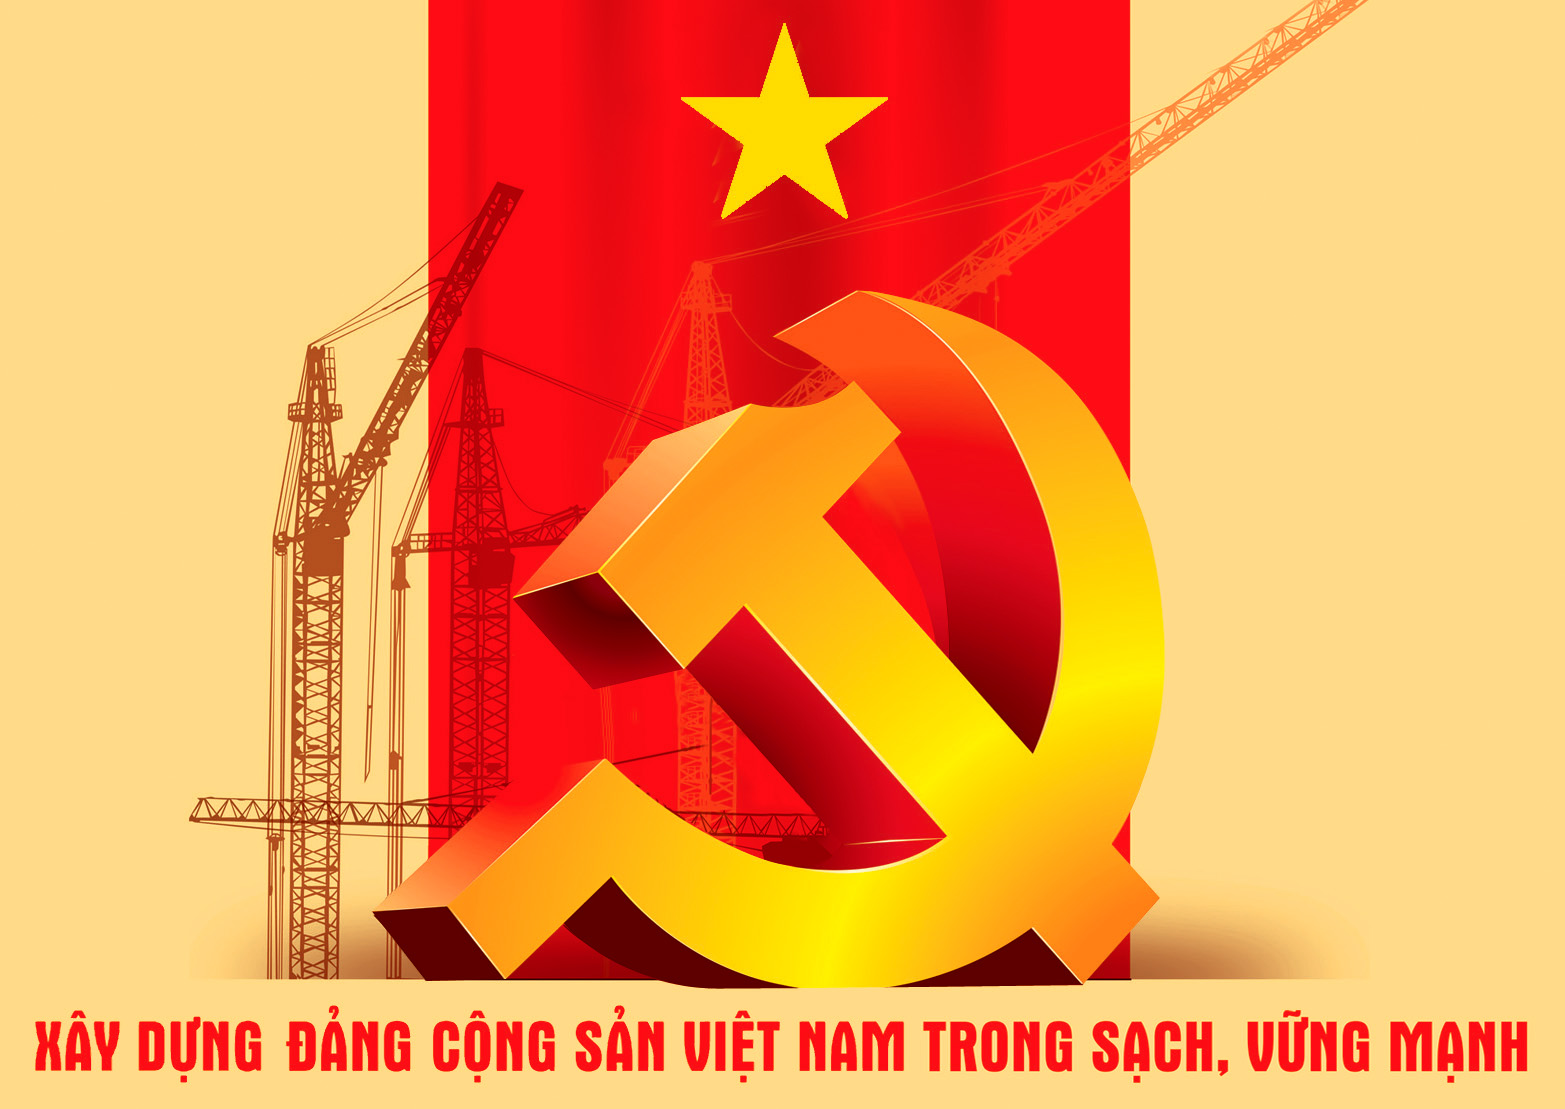 Hành trình từ chủ nghĩa yêu nước đến chủ nghĩa cộng sản của đồng chí Nguyễn Chí Diểu